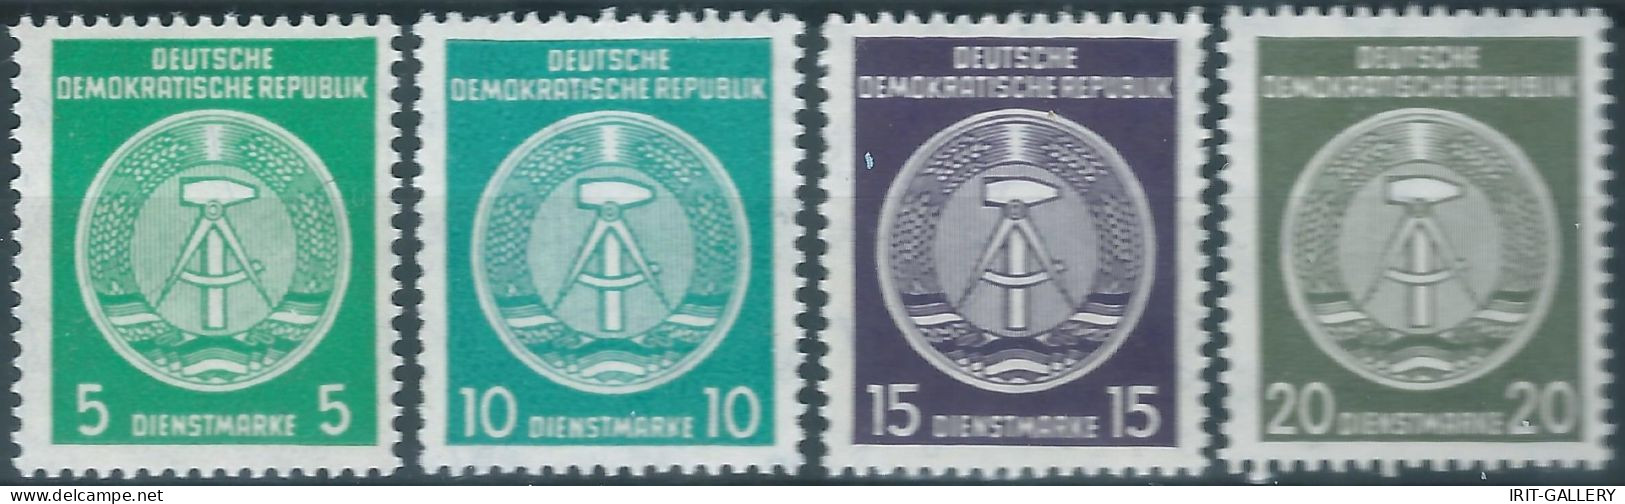 Germany-Deutschland,1954 /1956 Eastern Democratic Republic,DDR ,Service,MNH - Ungebraucht